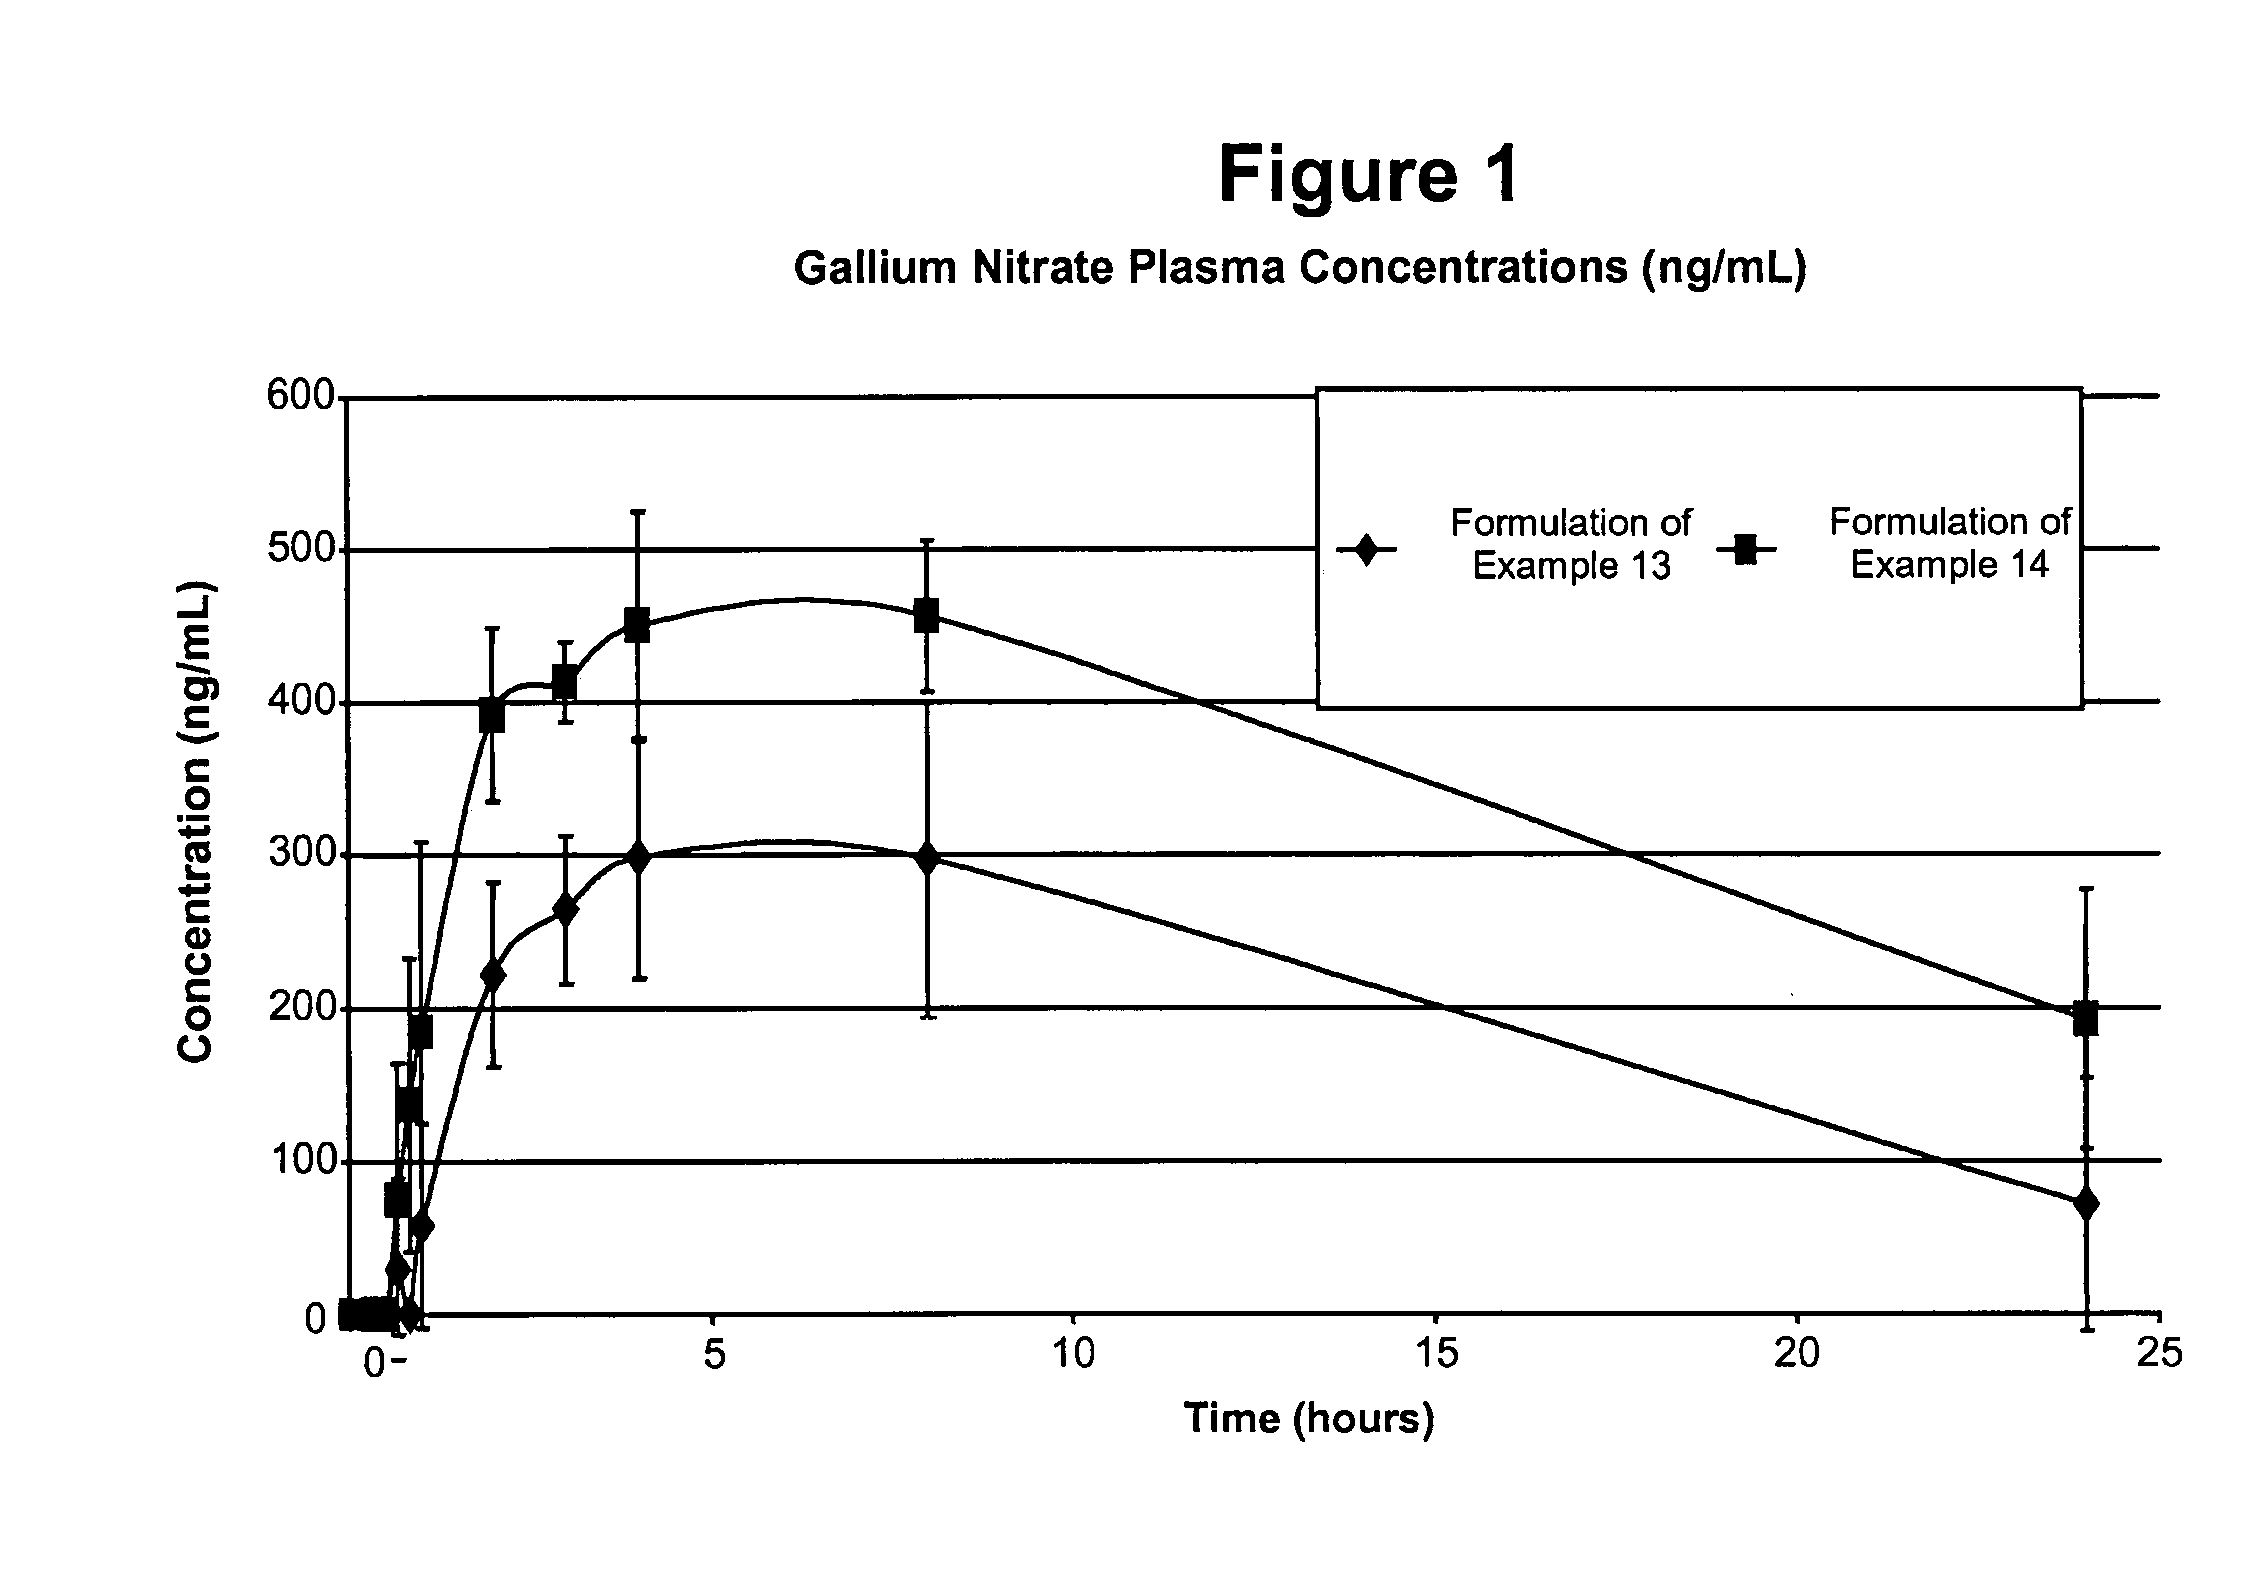 Gallium nitrate formulations